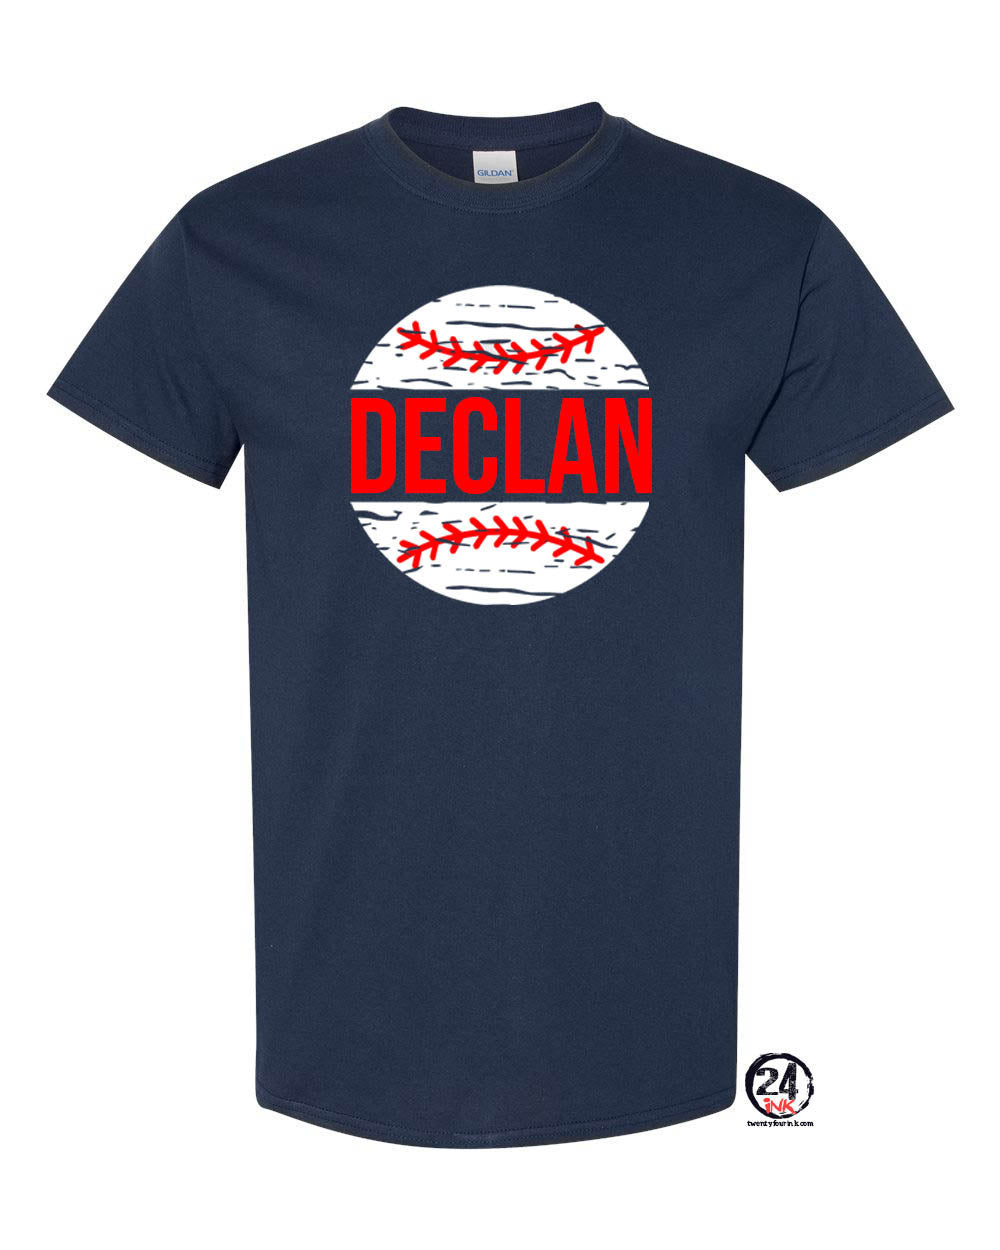 Personalized baseball t-shirt